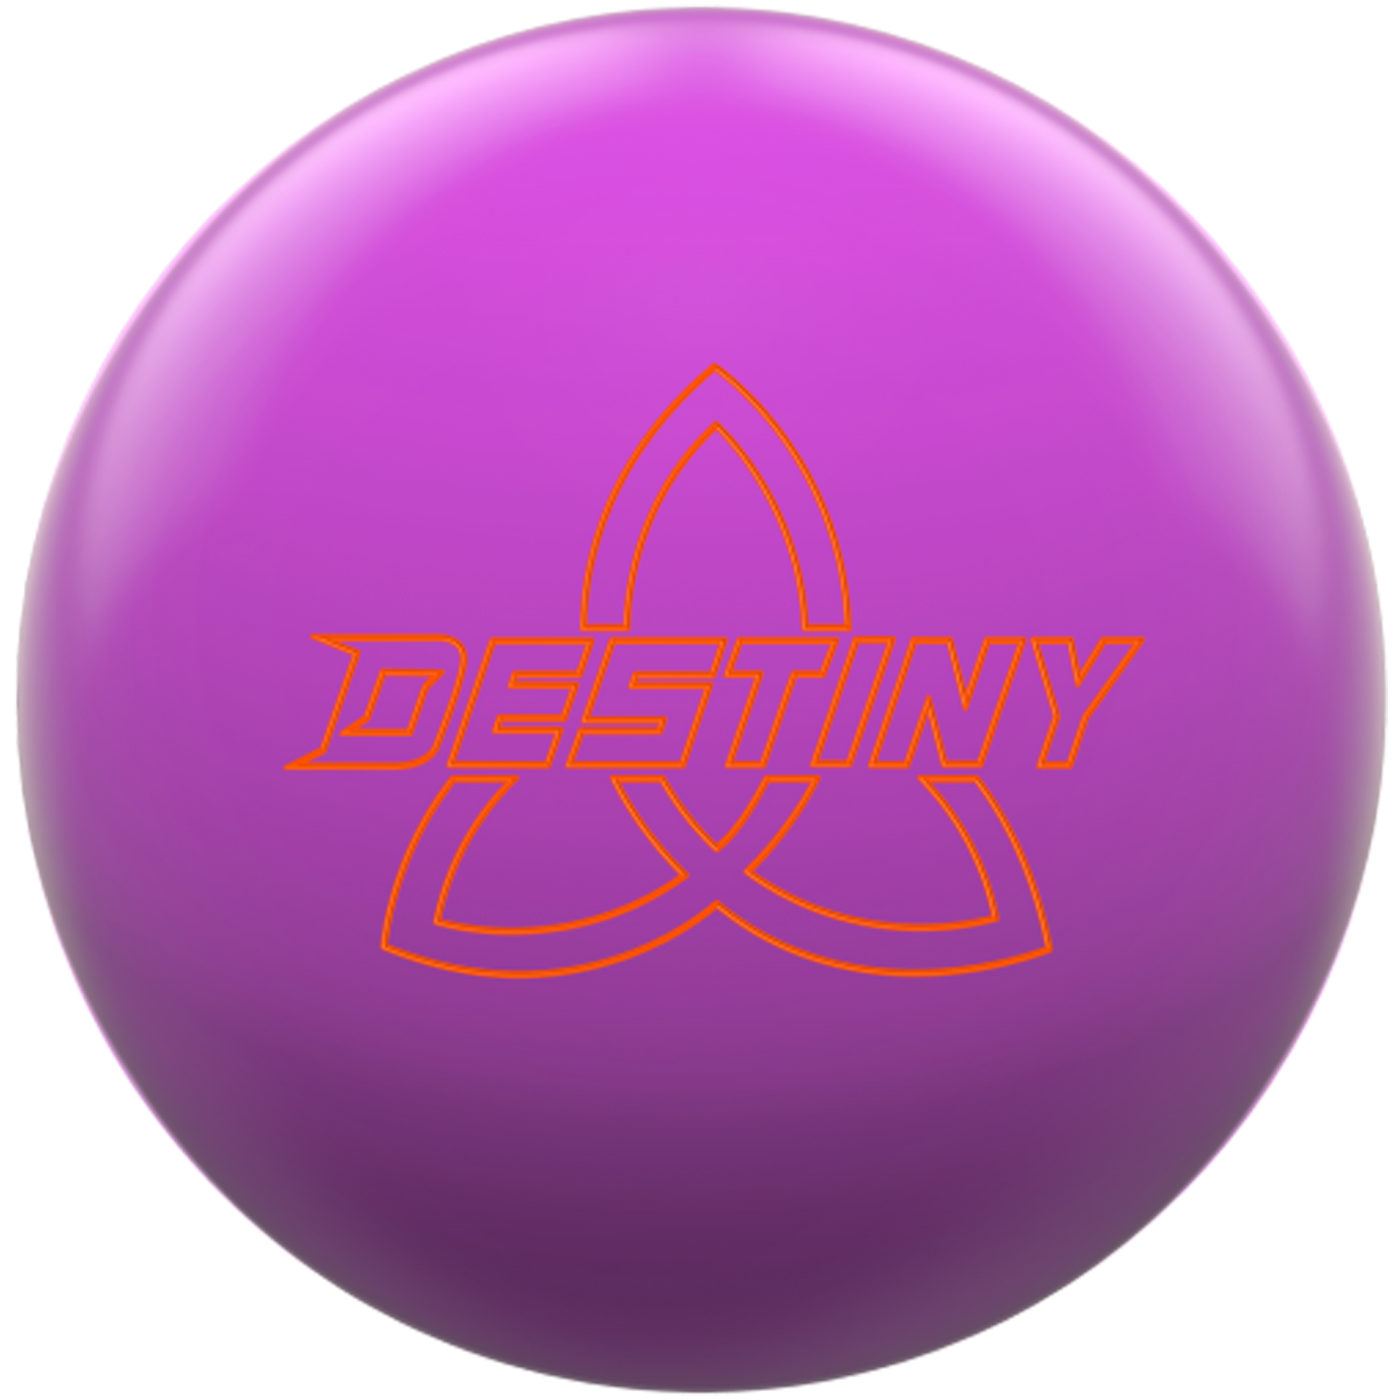 Destiny Solid Magenta Bowling Ball